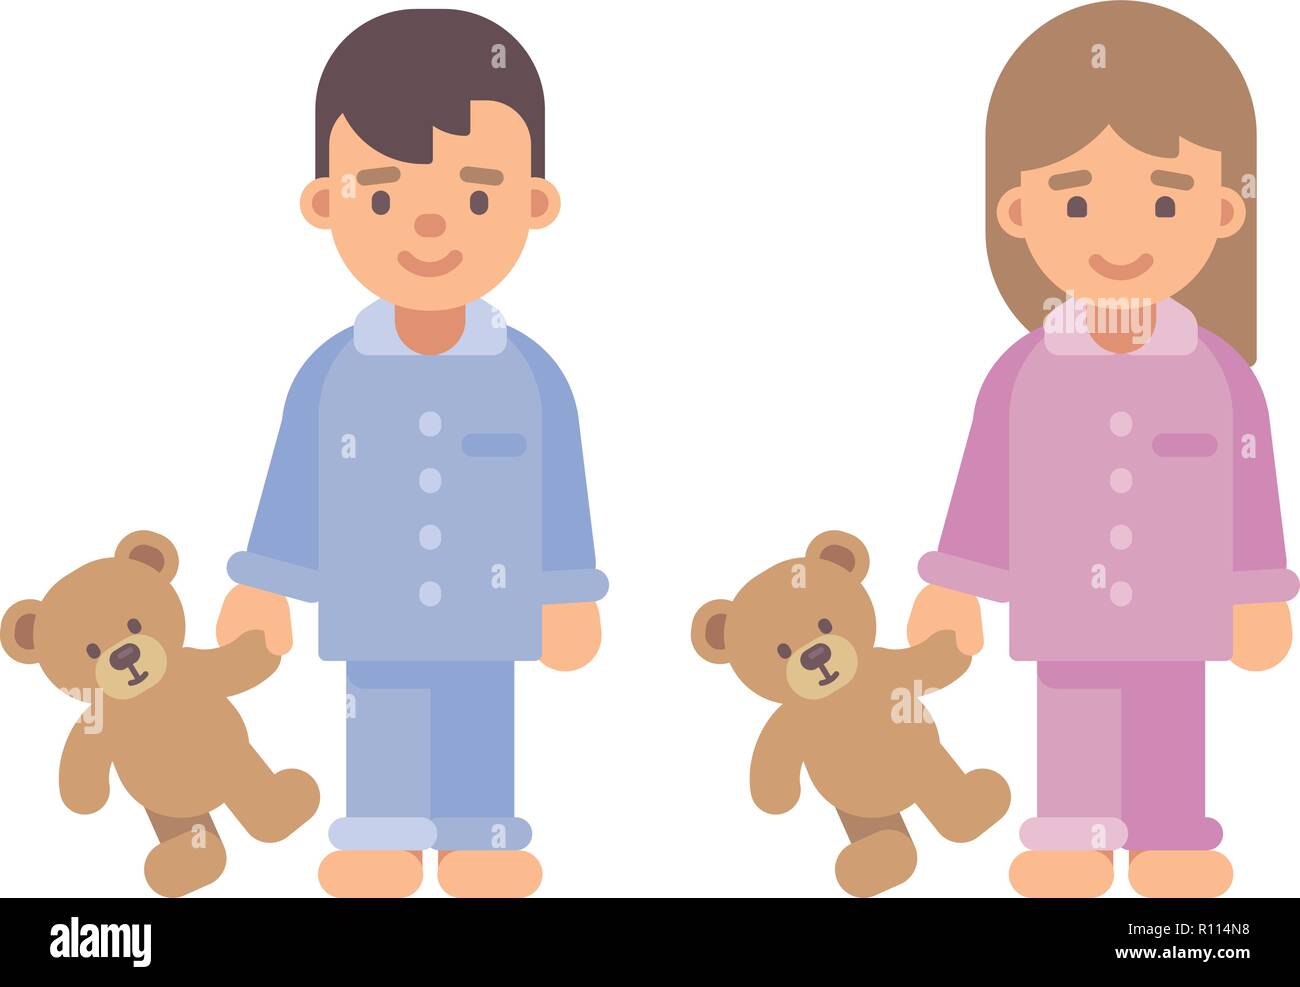 Zwei süße kleine Kinder im Schlafanzug holding Teddybären. Junge und Mädchen flachbild Abbildung Stock Vektor